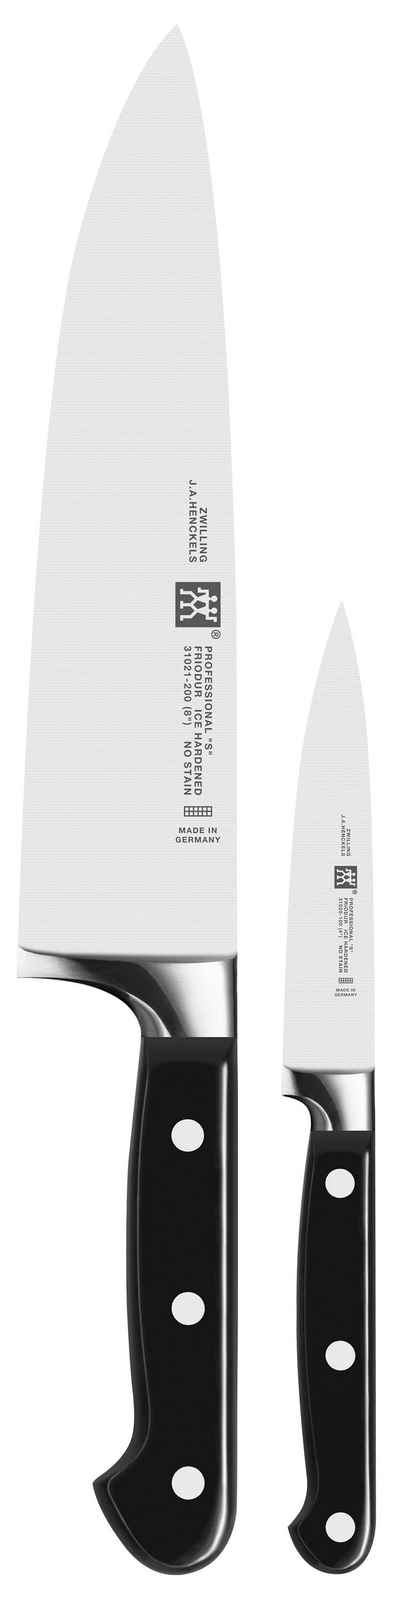 Zwilling Messer-Set »SIGMAFORGE® Professional S« (Set, 2-tlg., 1 Spick- und Garniermesser (10 cm), 1 Kochmesser (20 cm), Edelstahl 18/10, aus einem Stück geschmiedet